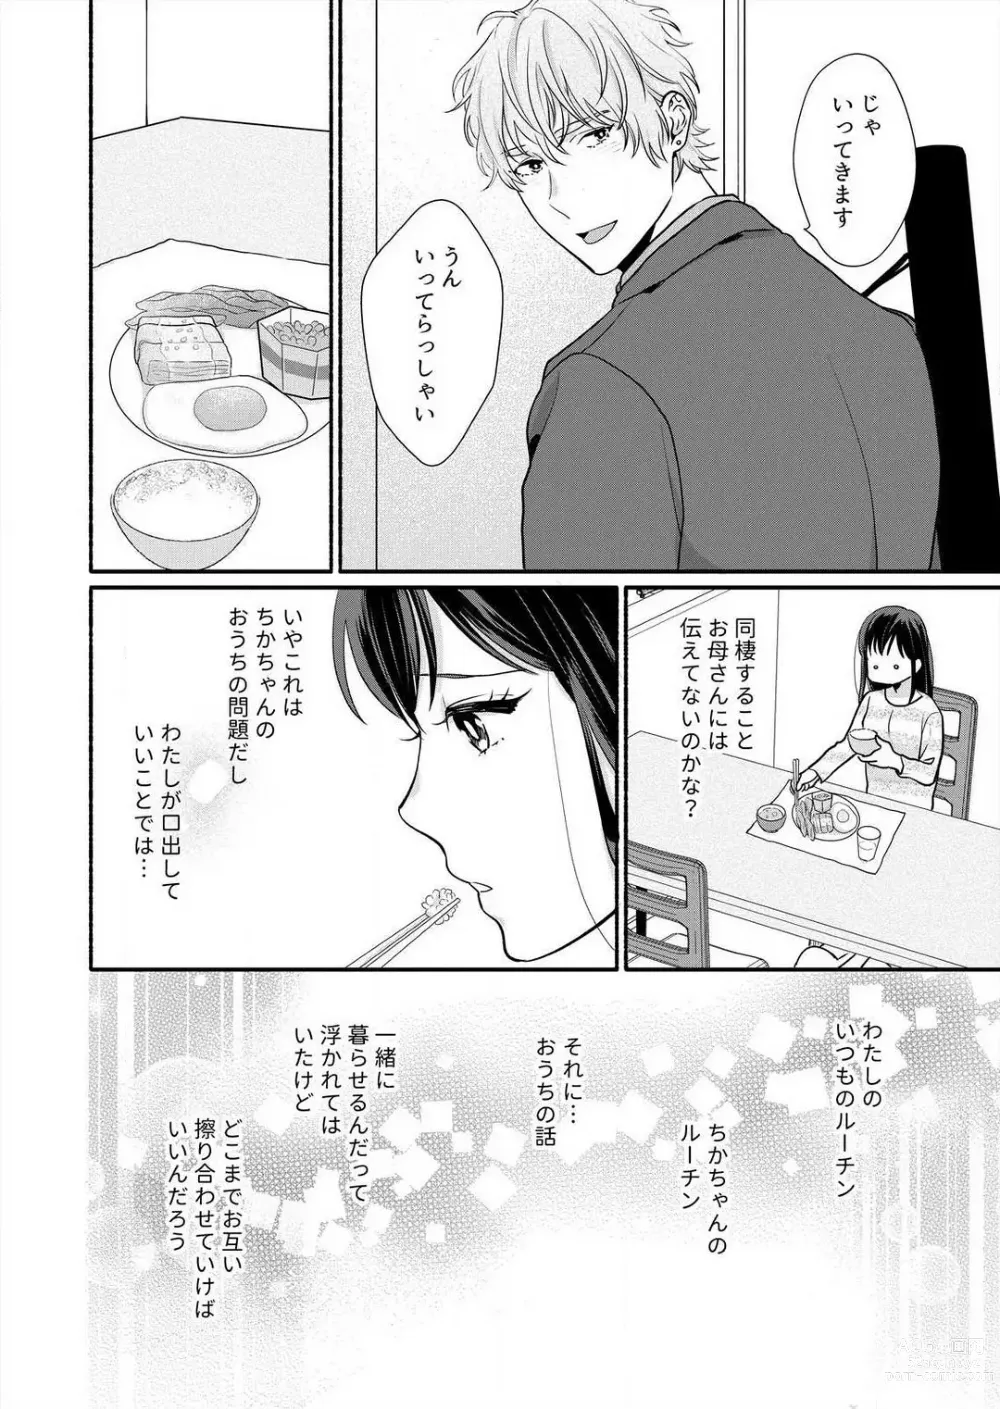 Page 180 of manga Suki Kawaii Guchagucha ni Shitai - Osananajimi wa Kojirase Sugiteru 1-8